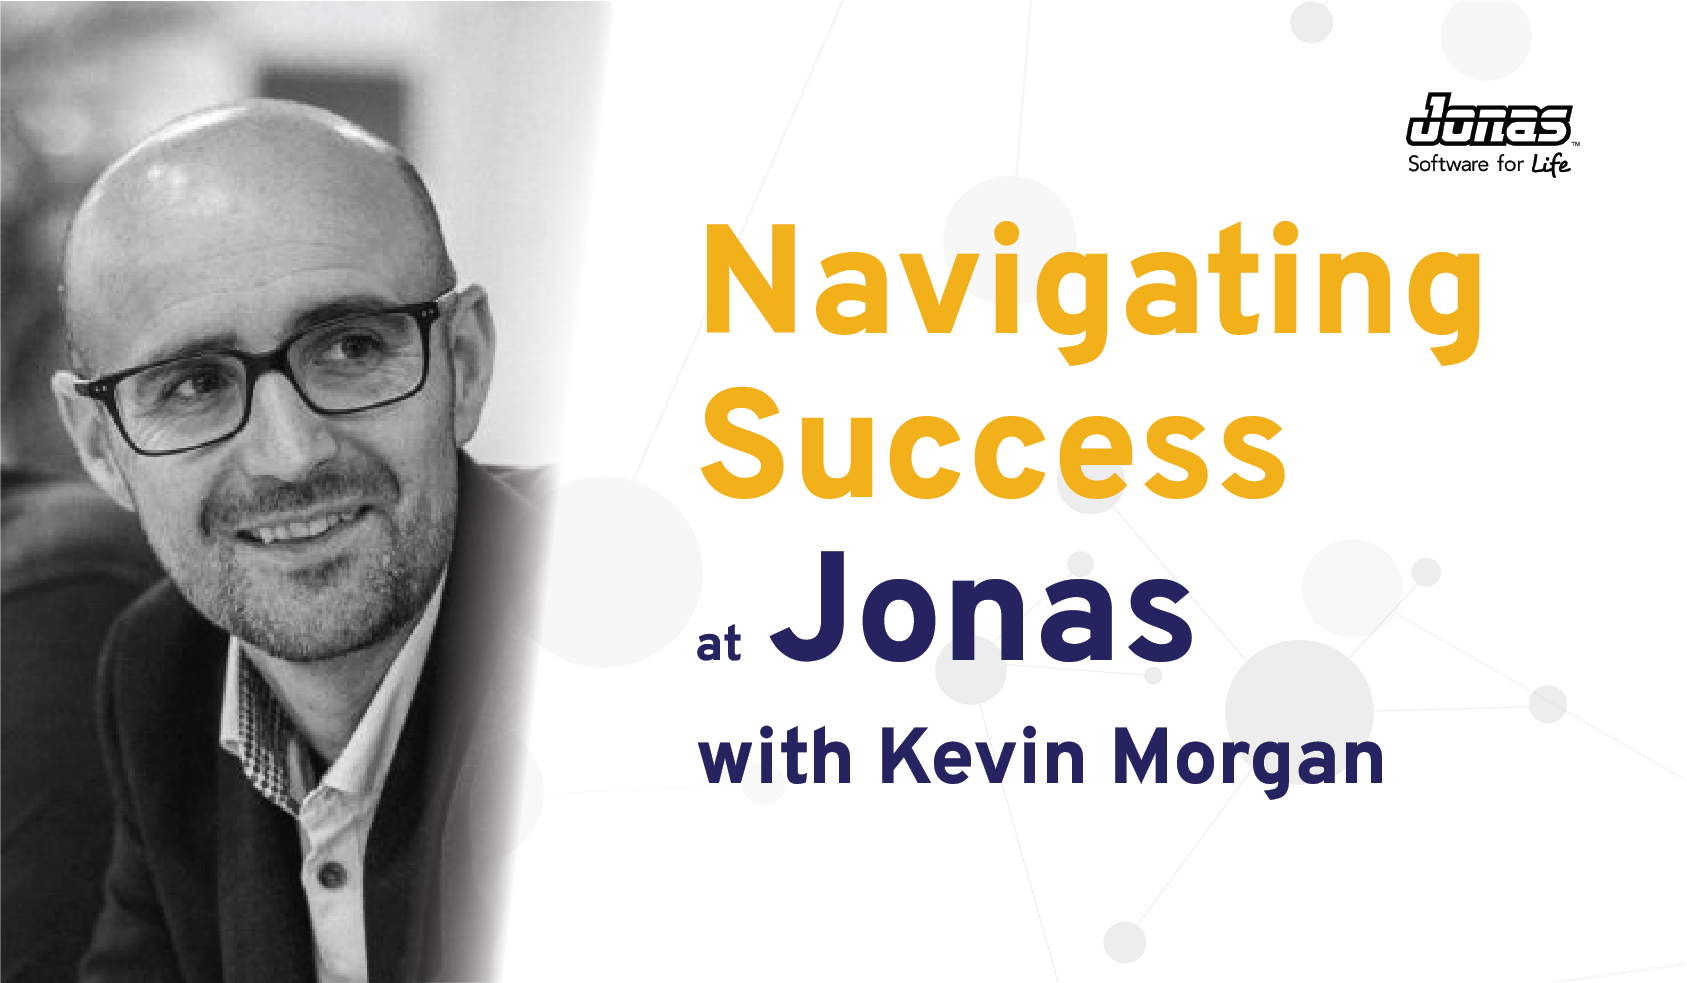 Navigating Success At Jonas: Kevin Morgan